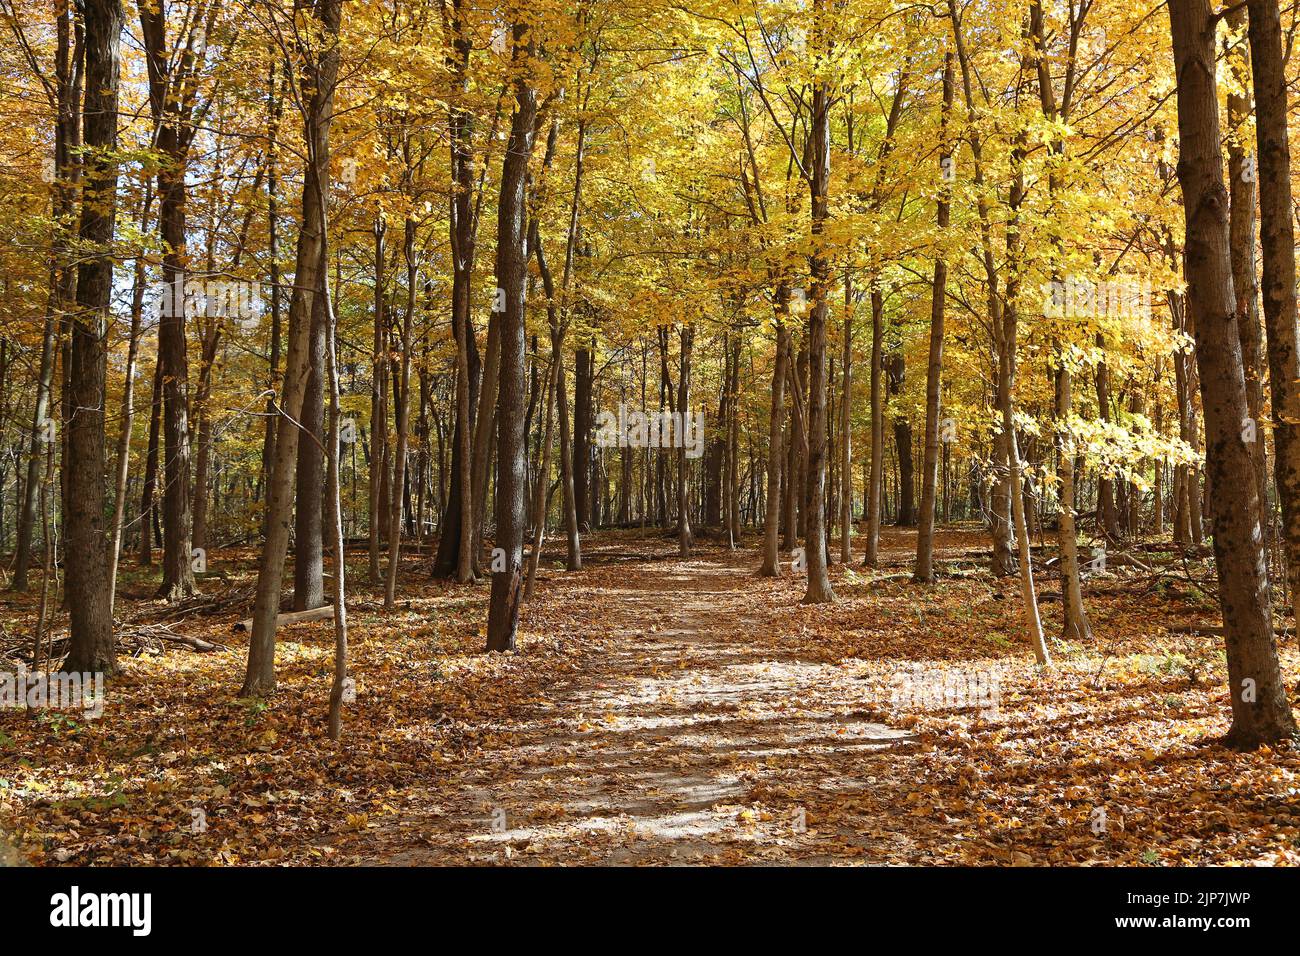 November forest - Glen Helen Nature Preserve, Ohio Stock Photo